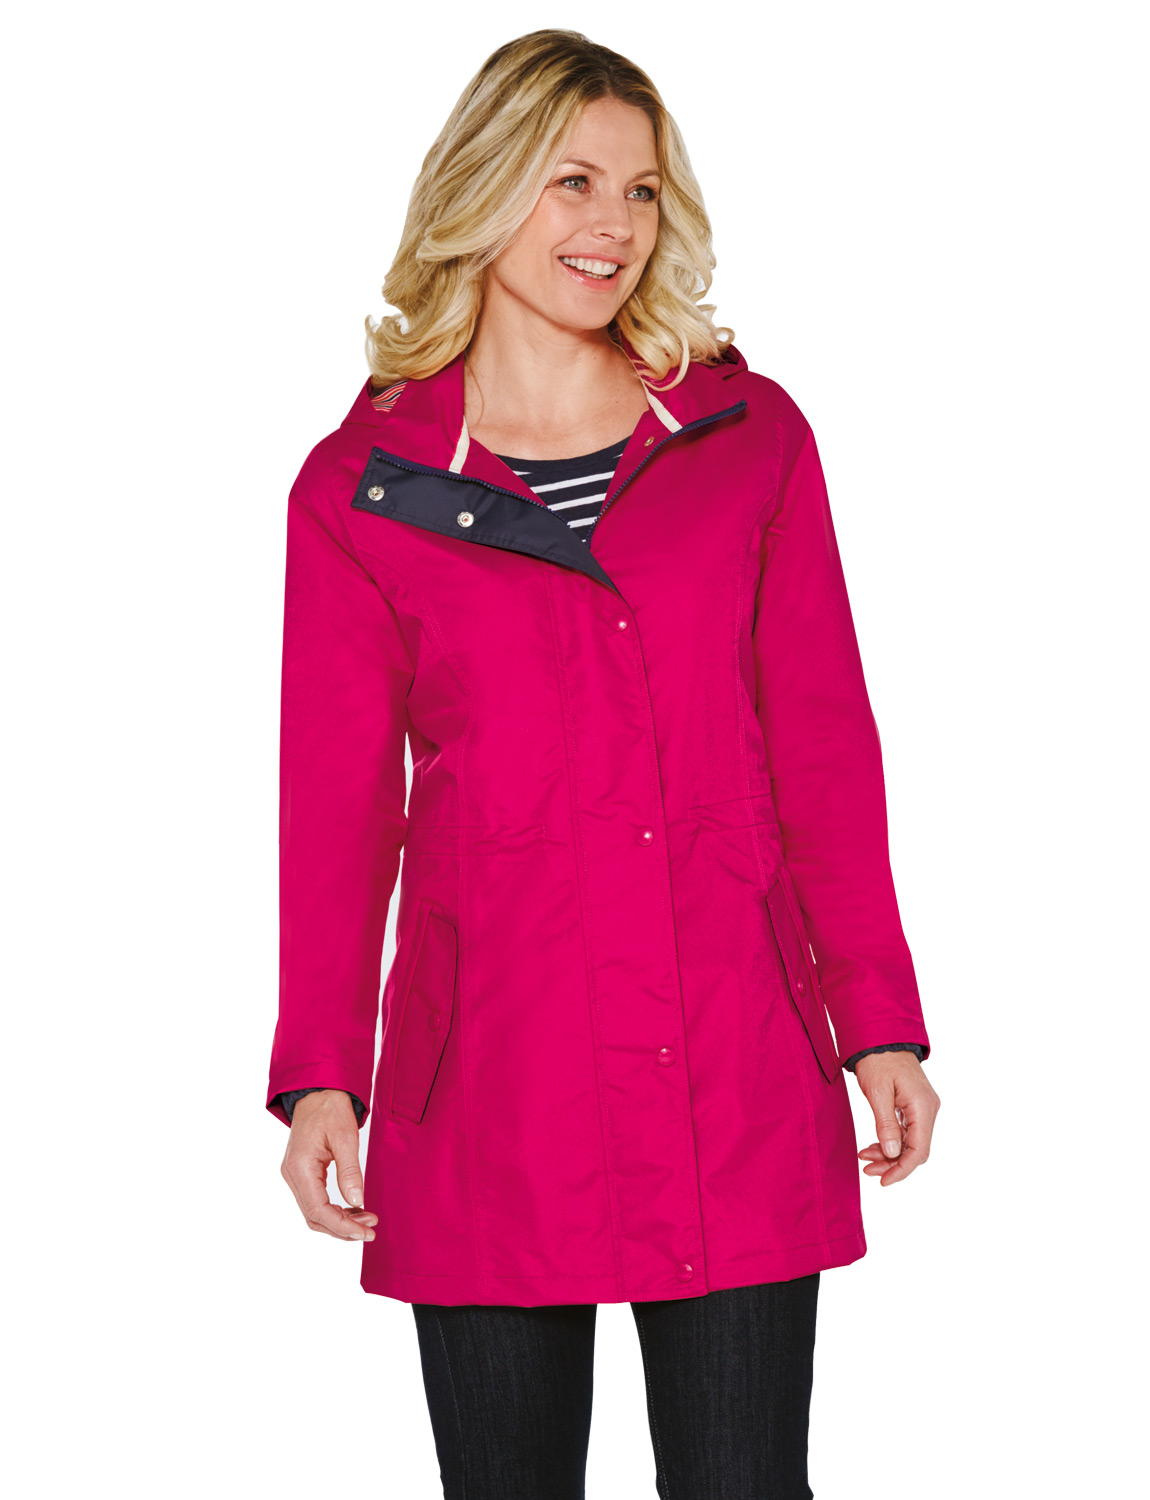 Ladies Arctic Storm Waterproof Jacket Coat | eBay